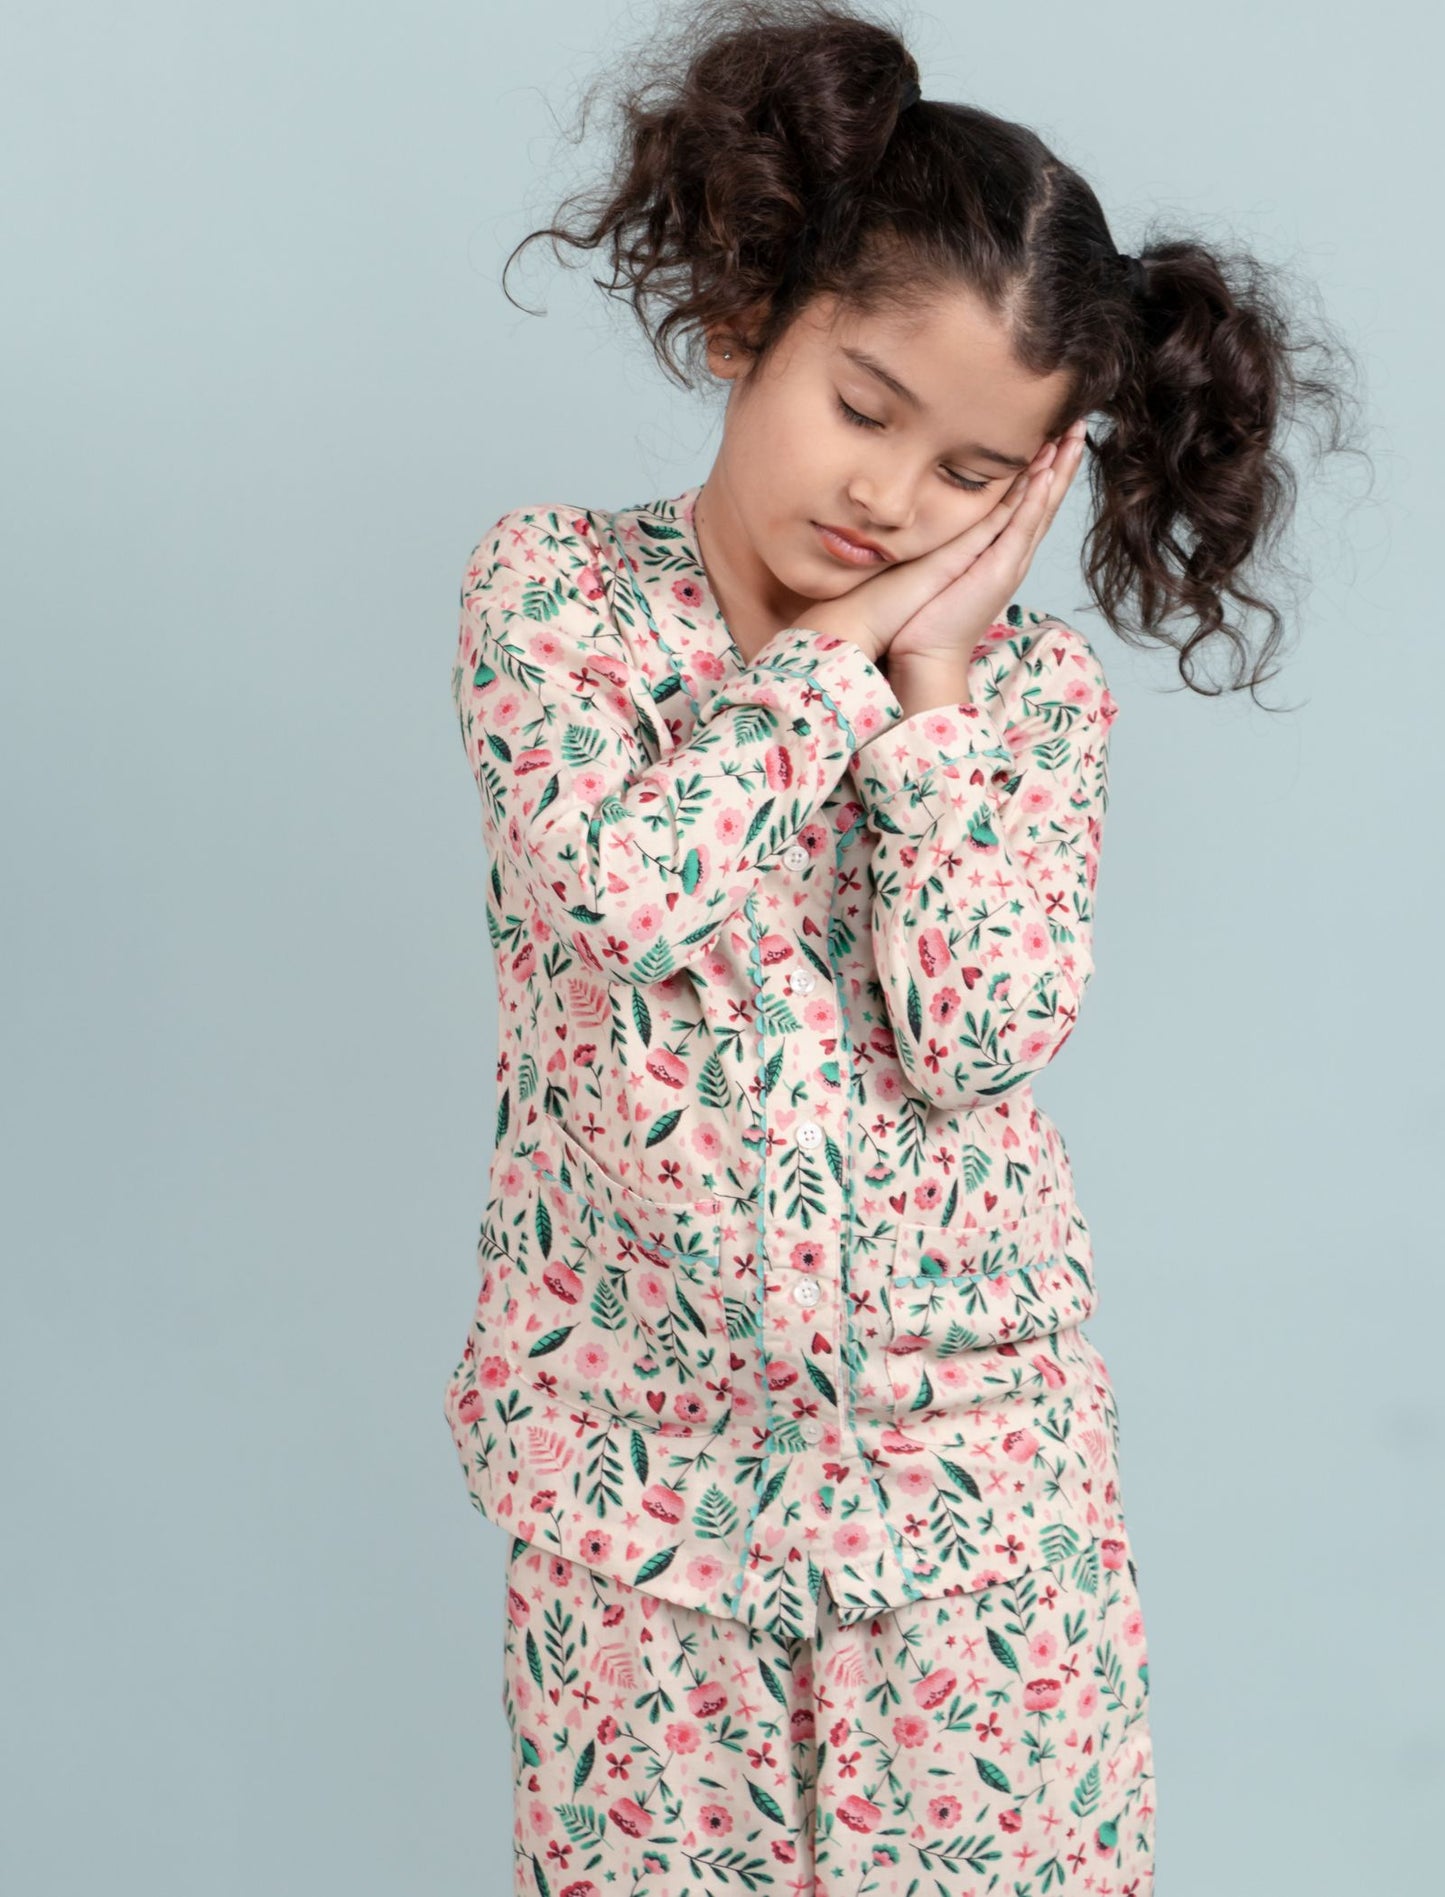 Girls Kids Floral Print Full Sleeve Night Suit (Beige)